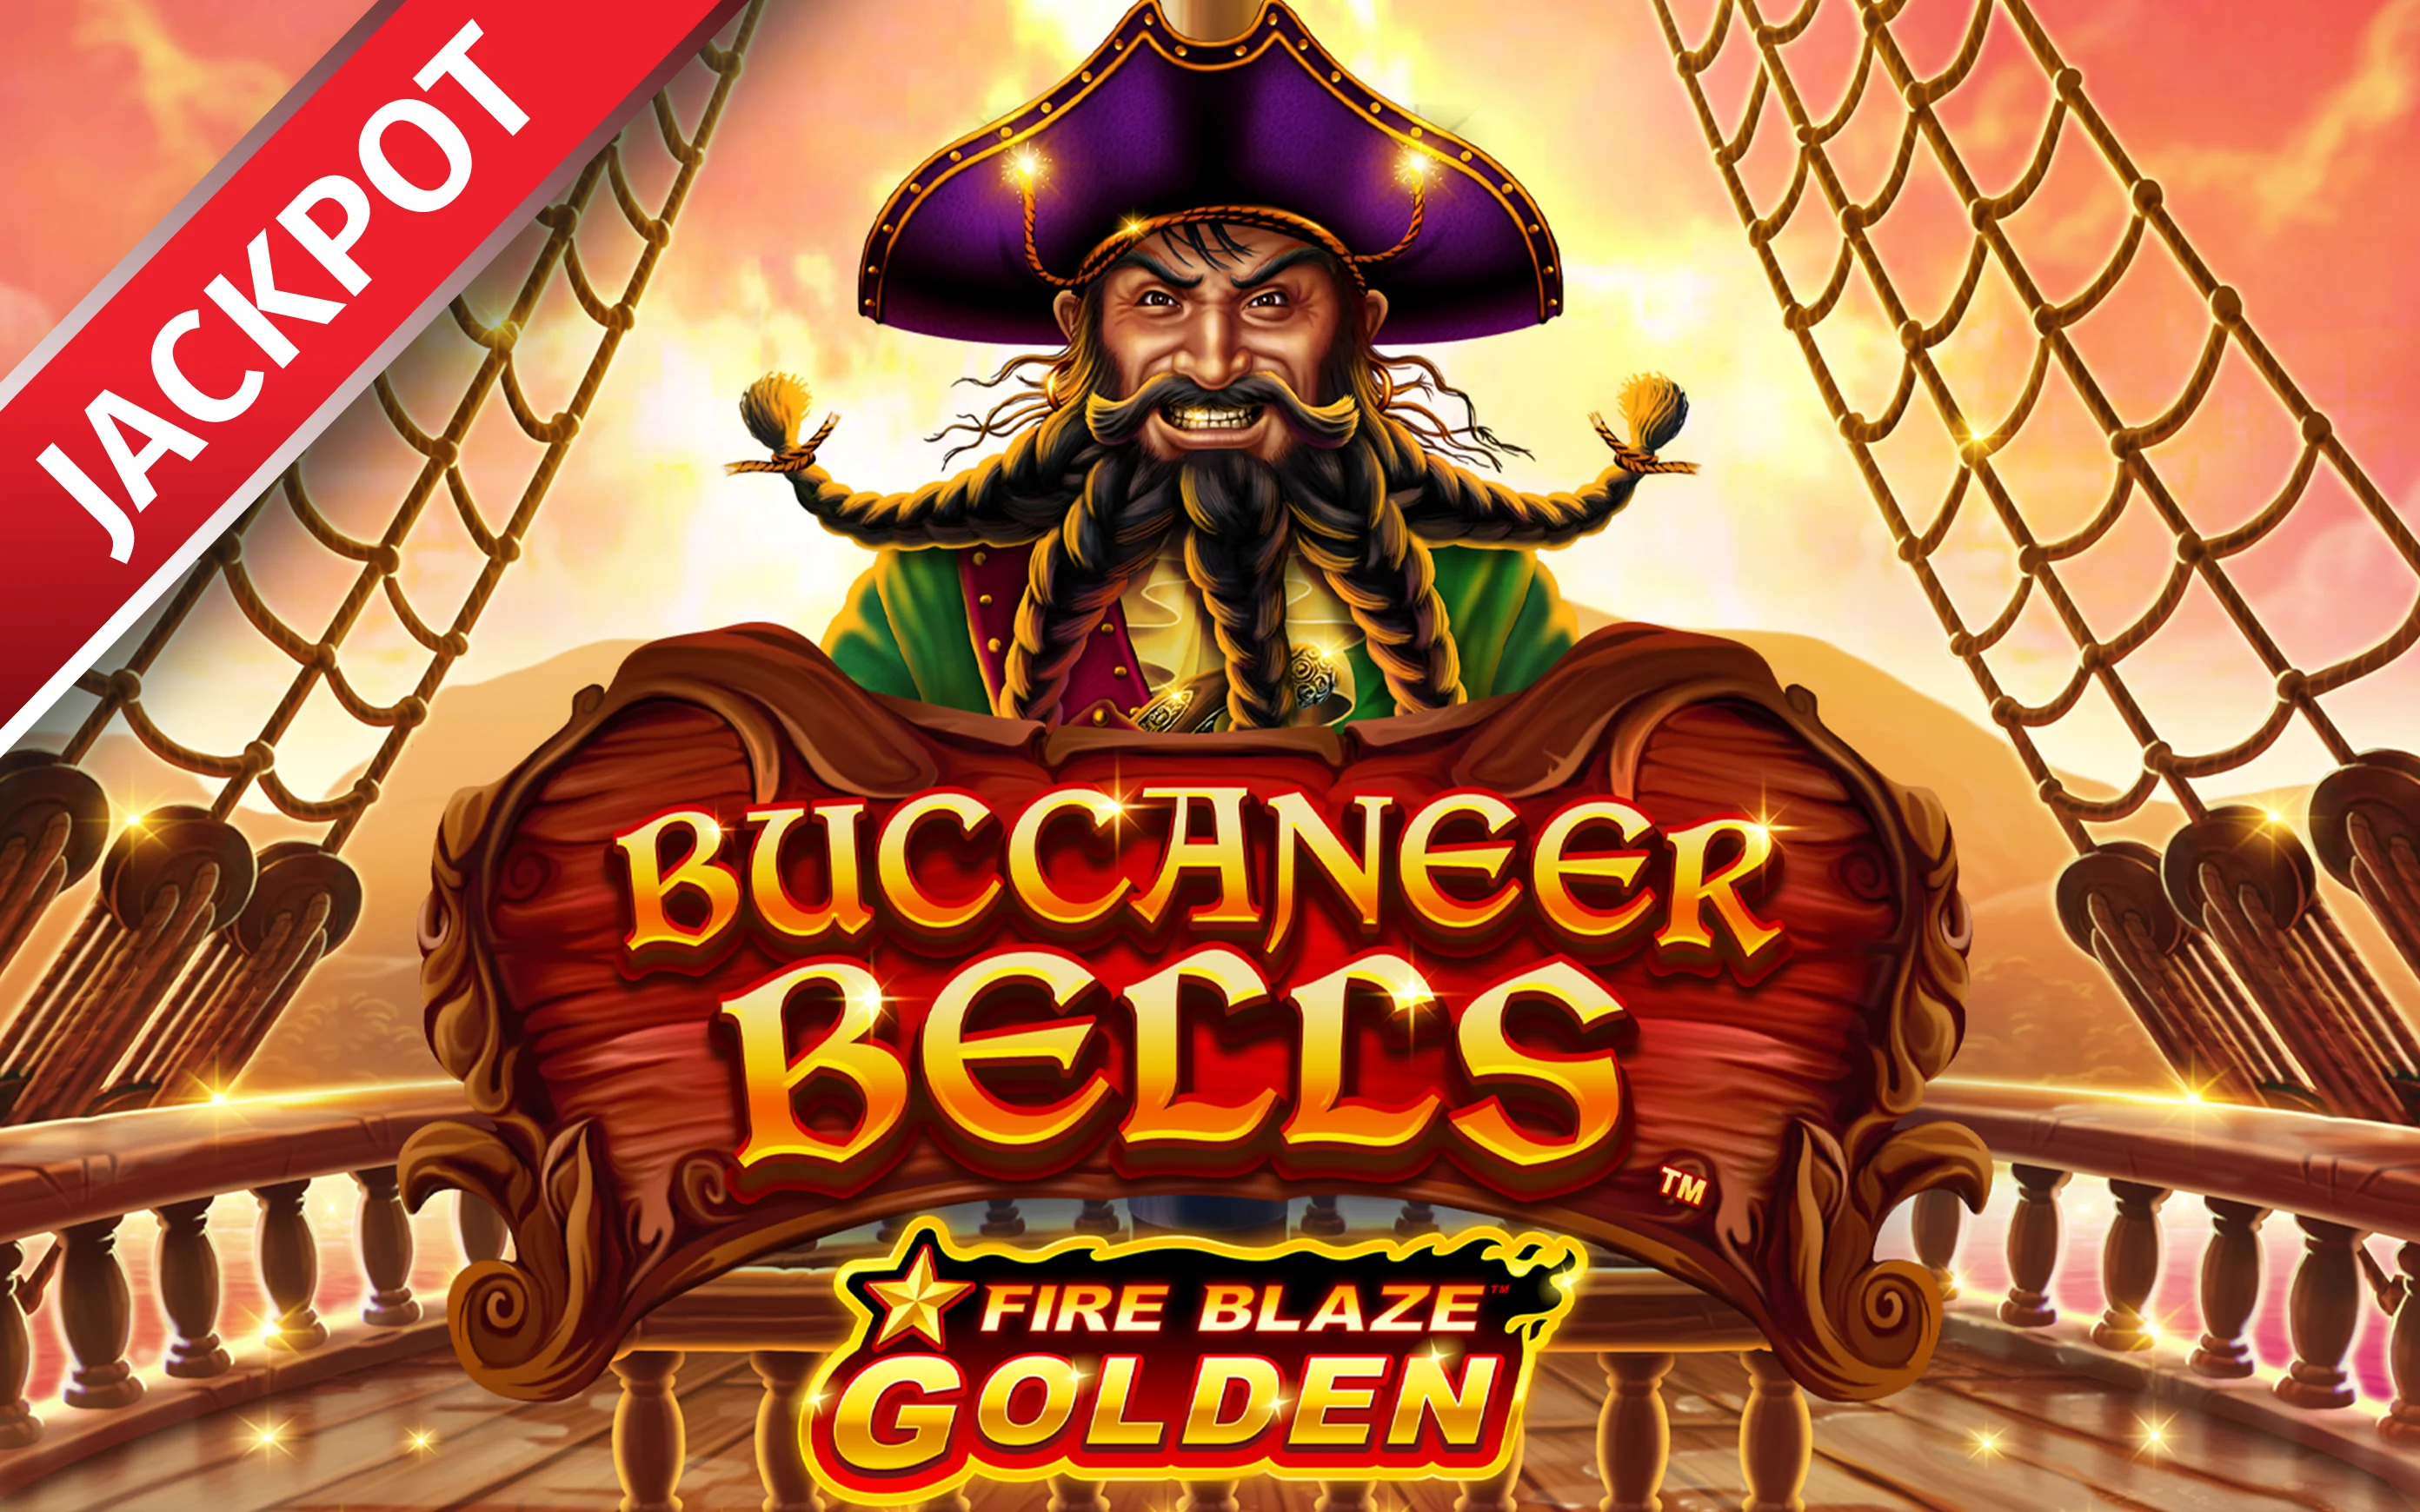 Spielen Sie Fire Blaze Golden Buccaneer Bells auf Starcasino.be-Online-Casino